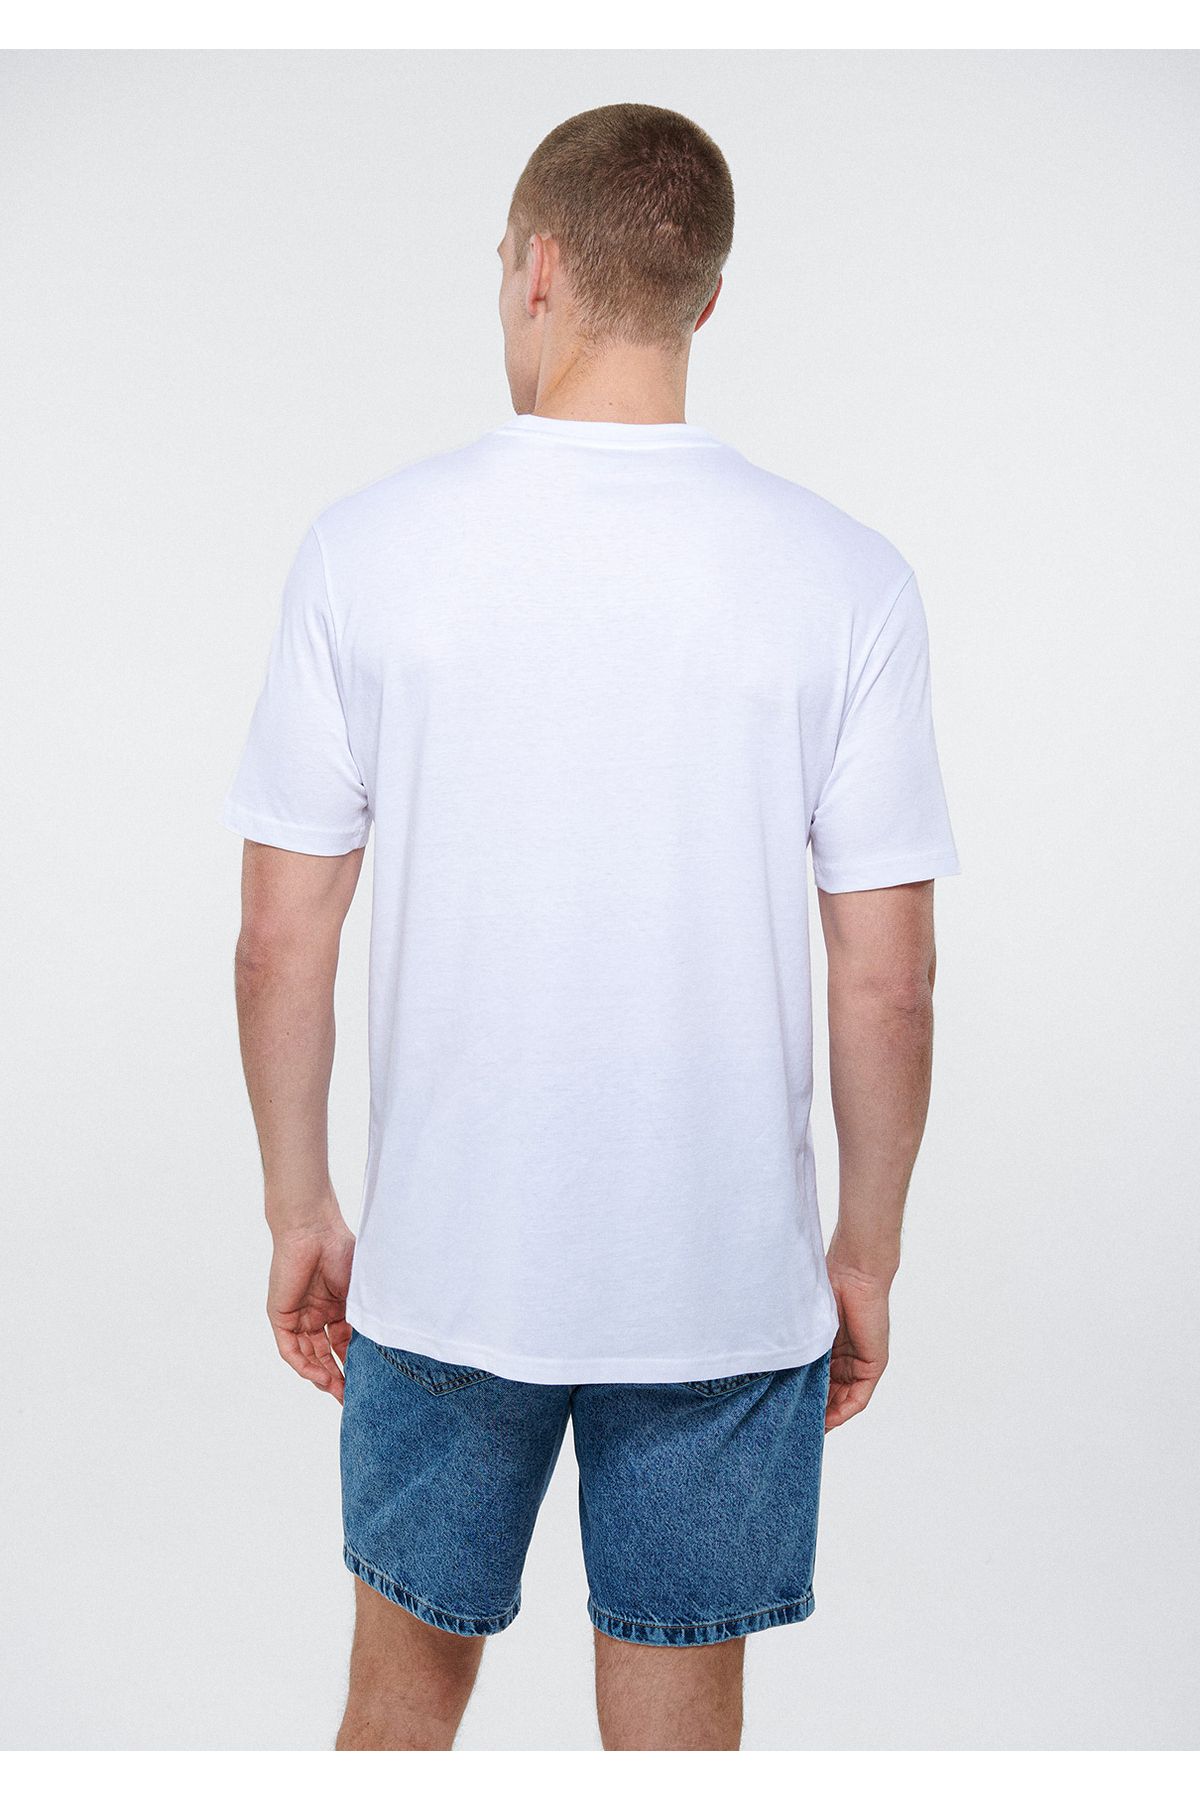 Mavi نمی توانم متنفری را بشنوید که تی شرت سفید چاپ شده است